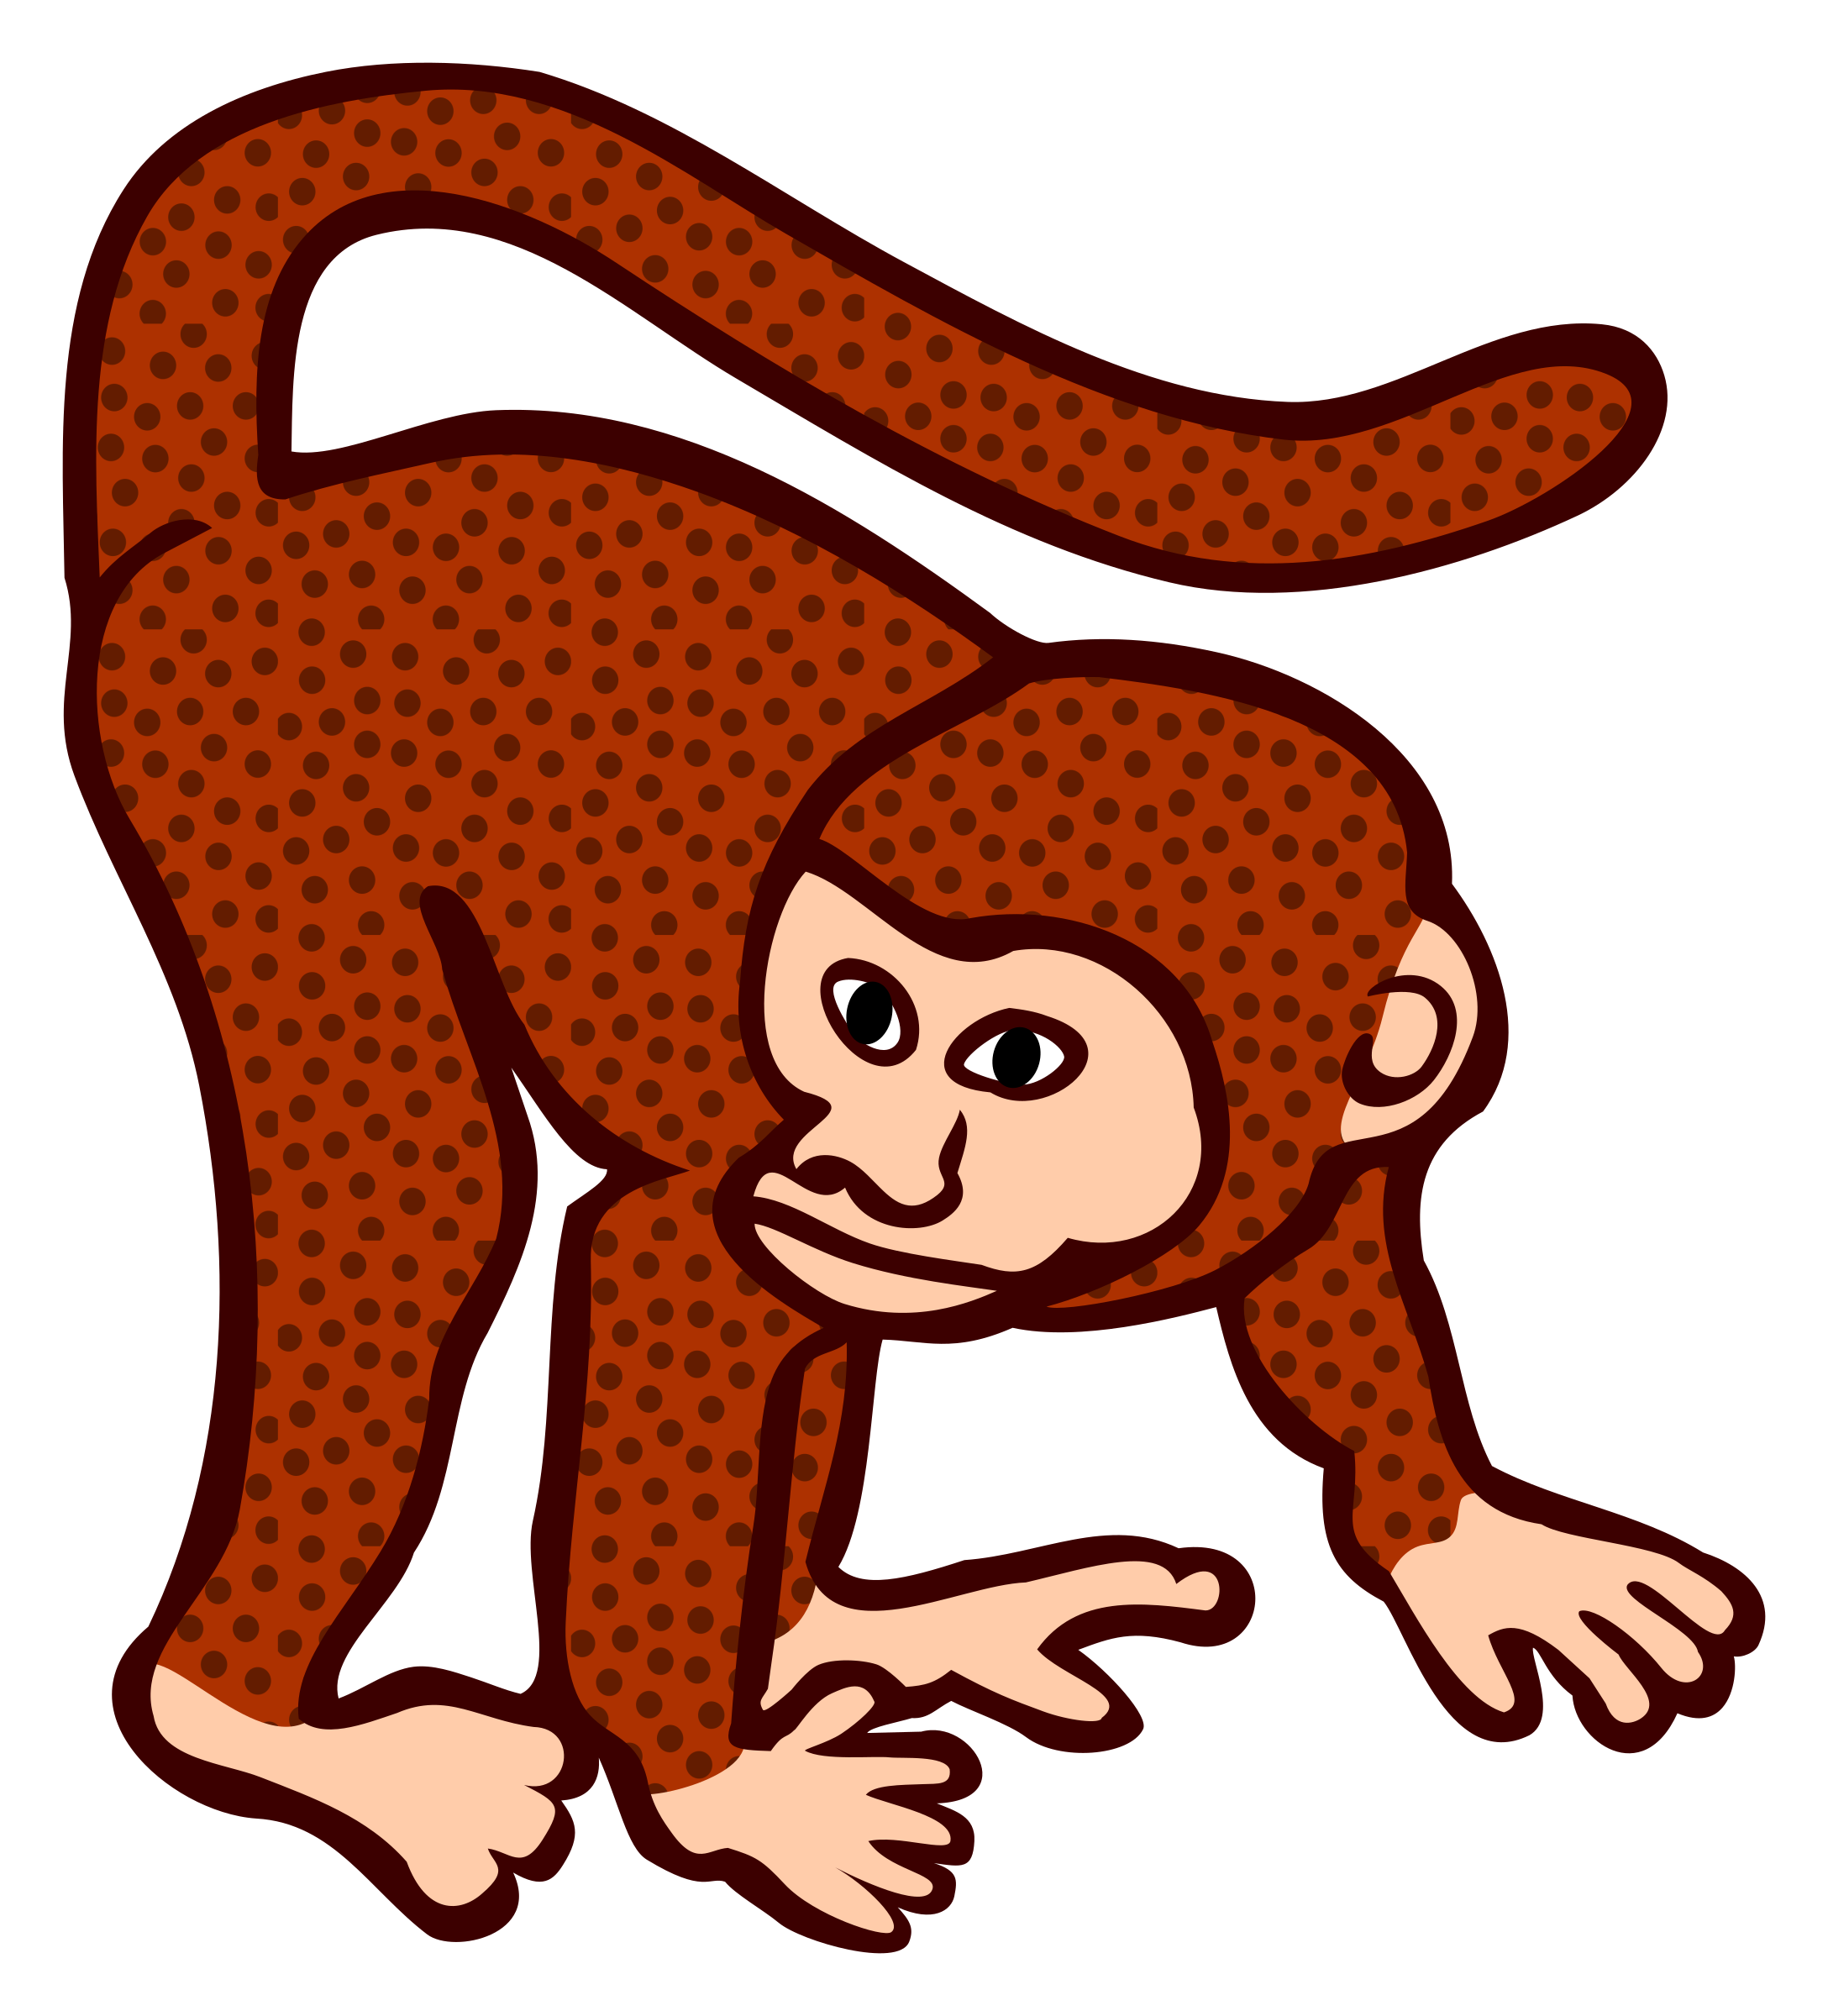 monkeys clipart school